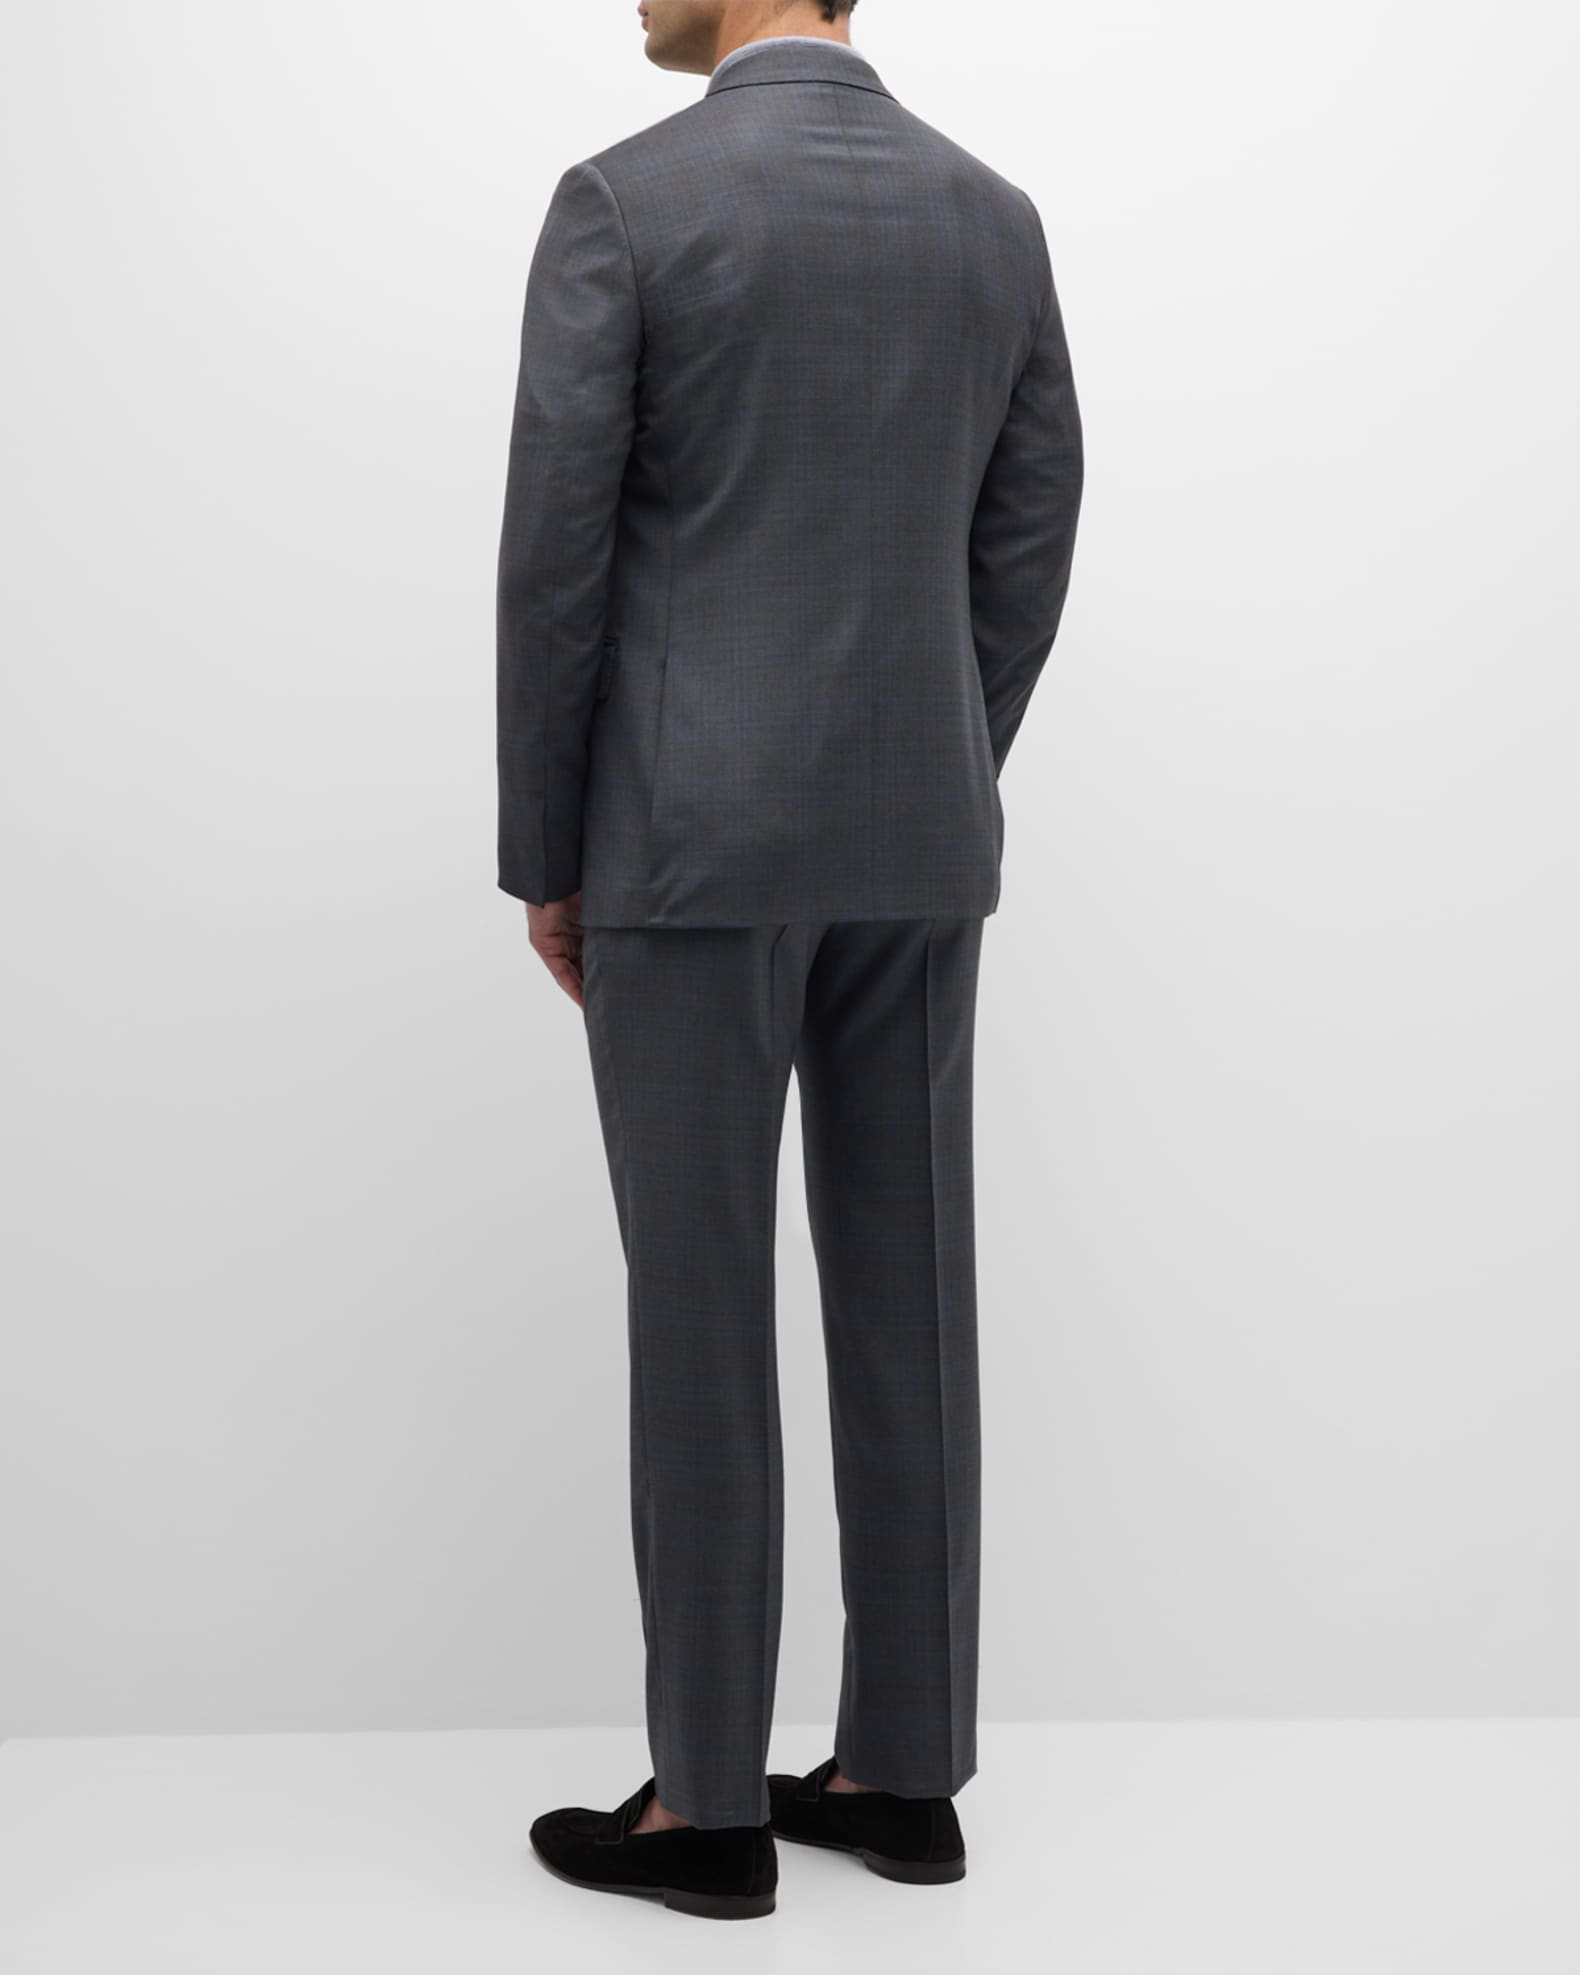 ZEGNA Men's Two-Tone Plaid Wool Suit | Neiman Marcus